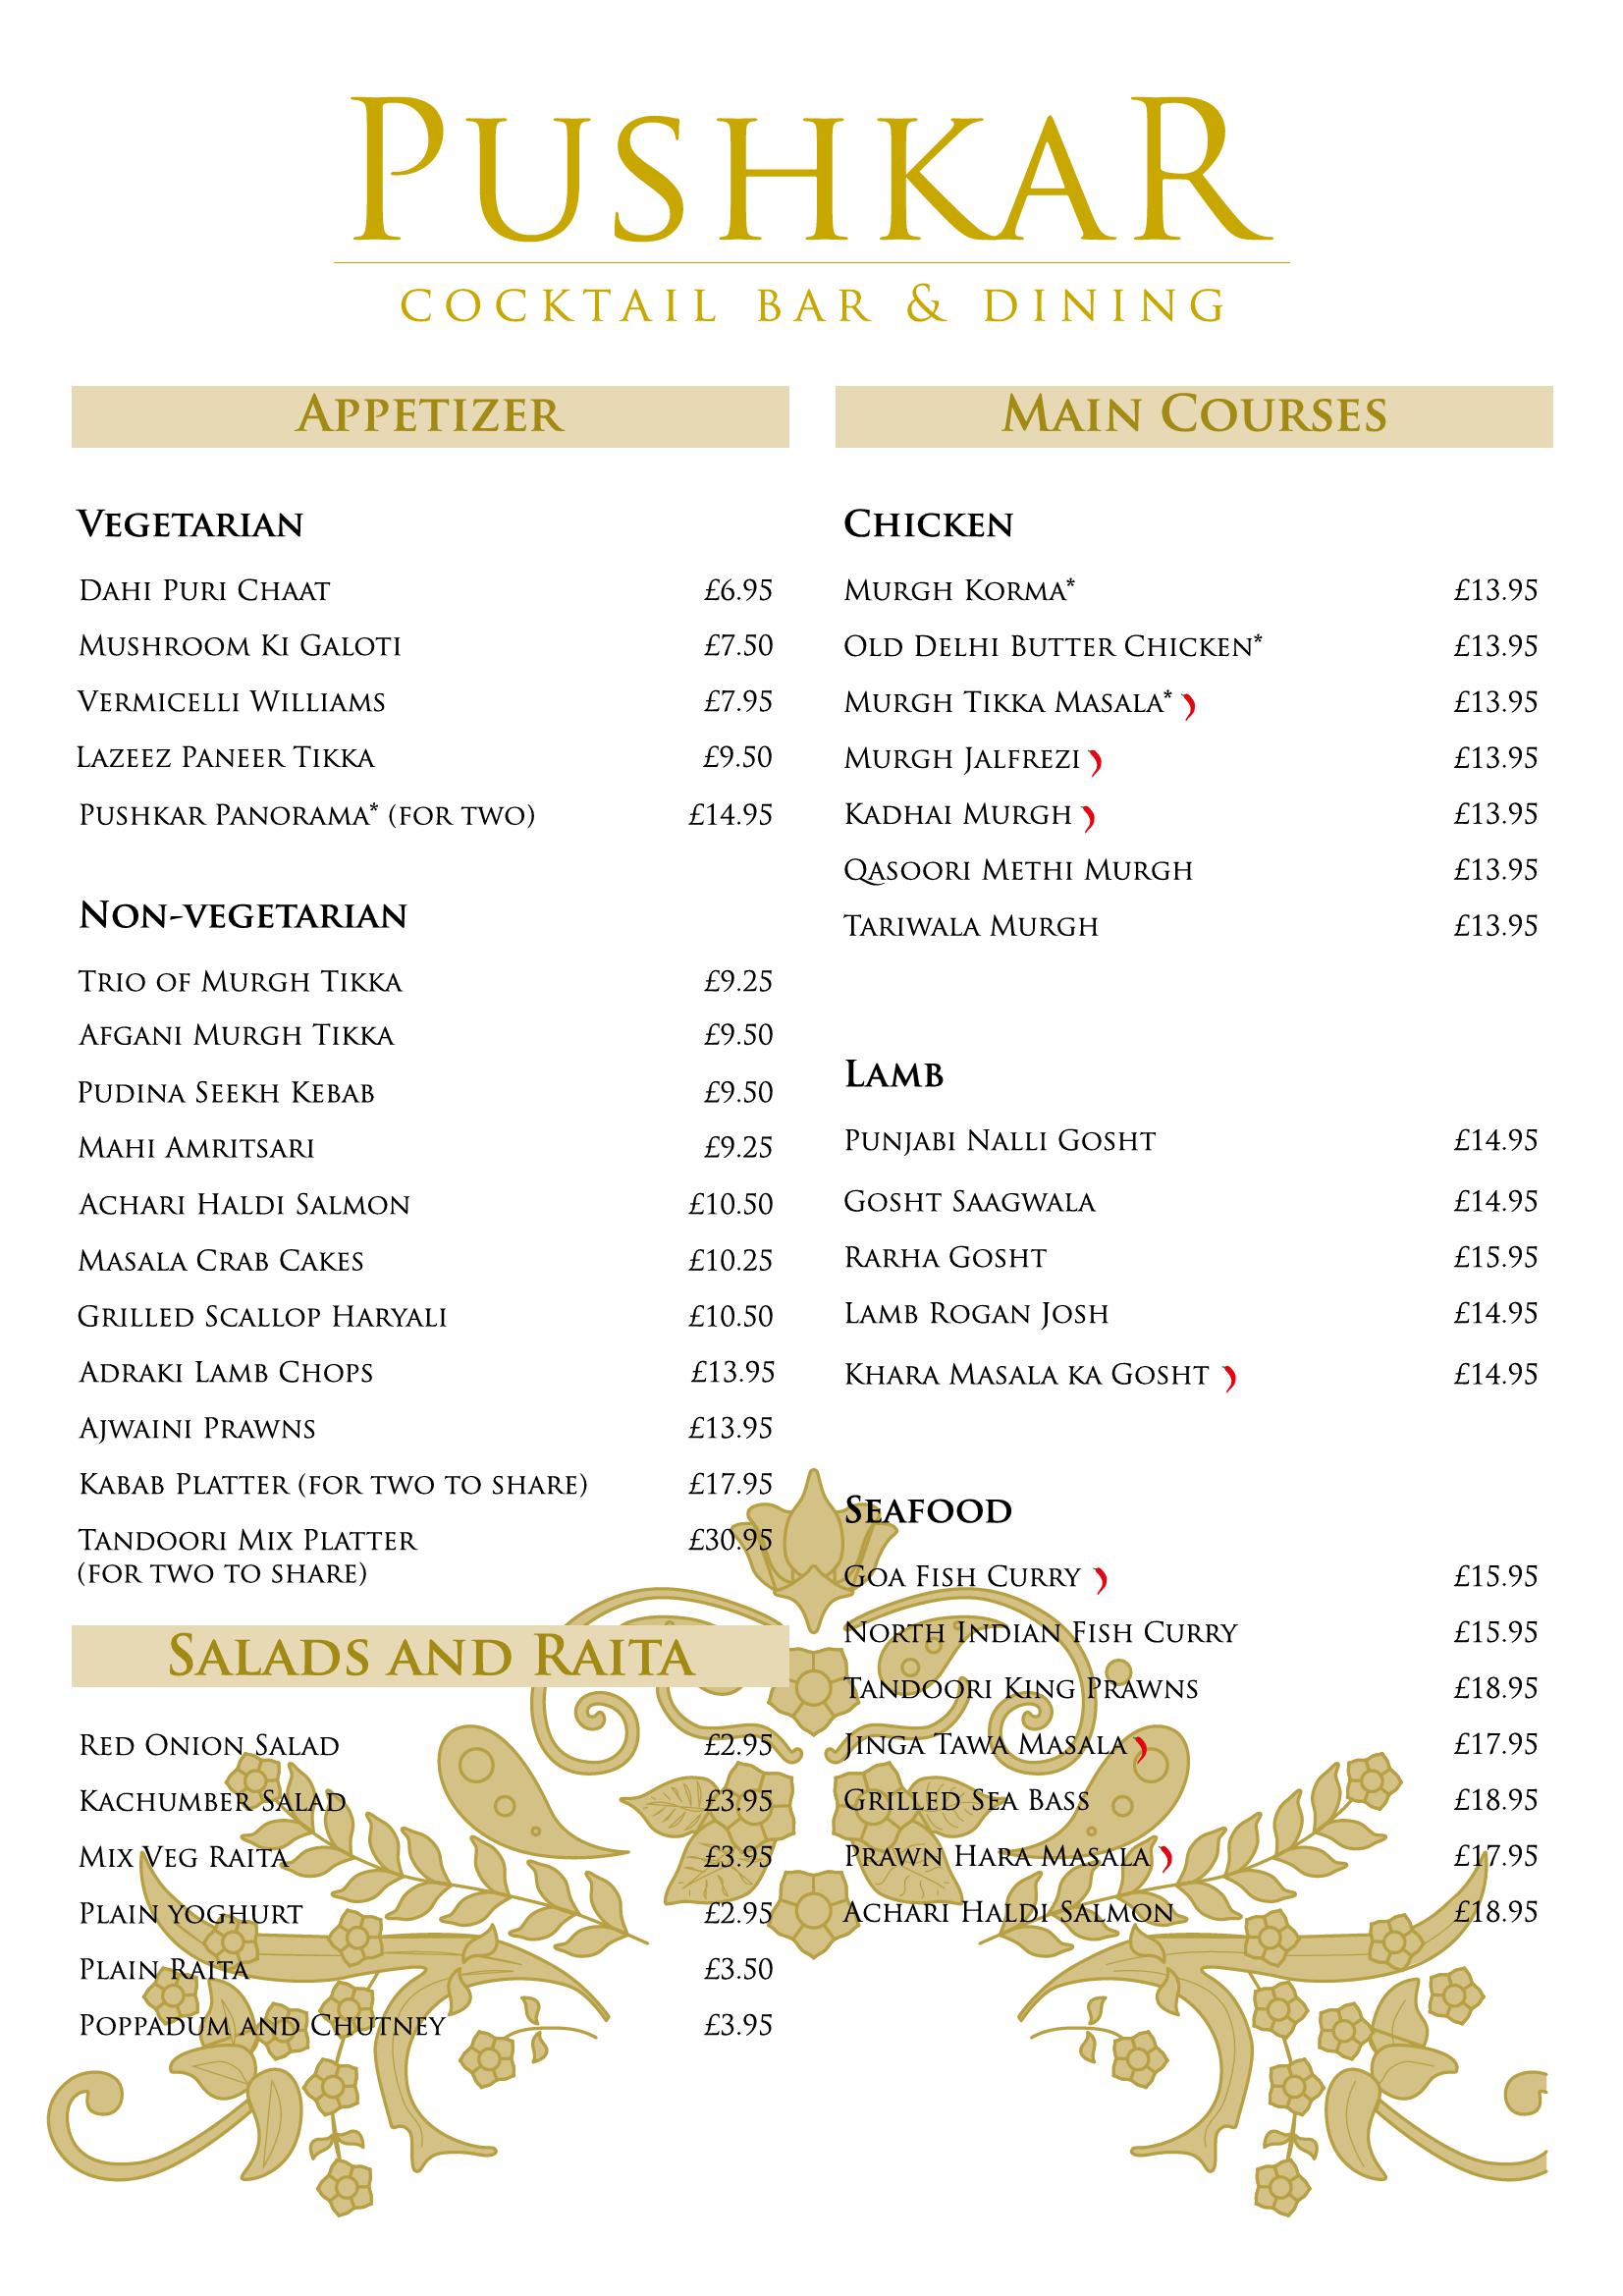 Pushkar Cocktail Bar & Indian Dining - main menu